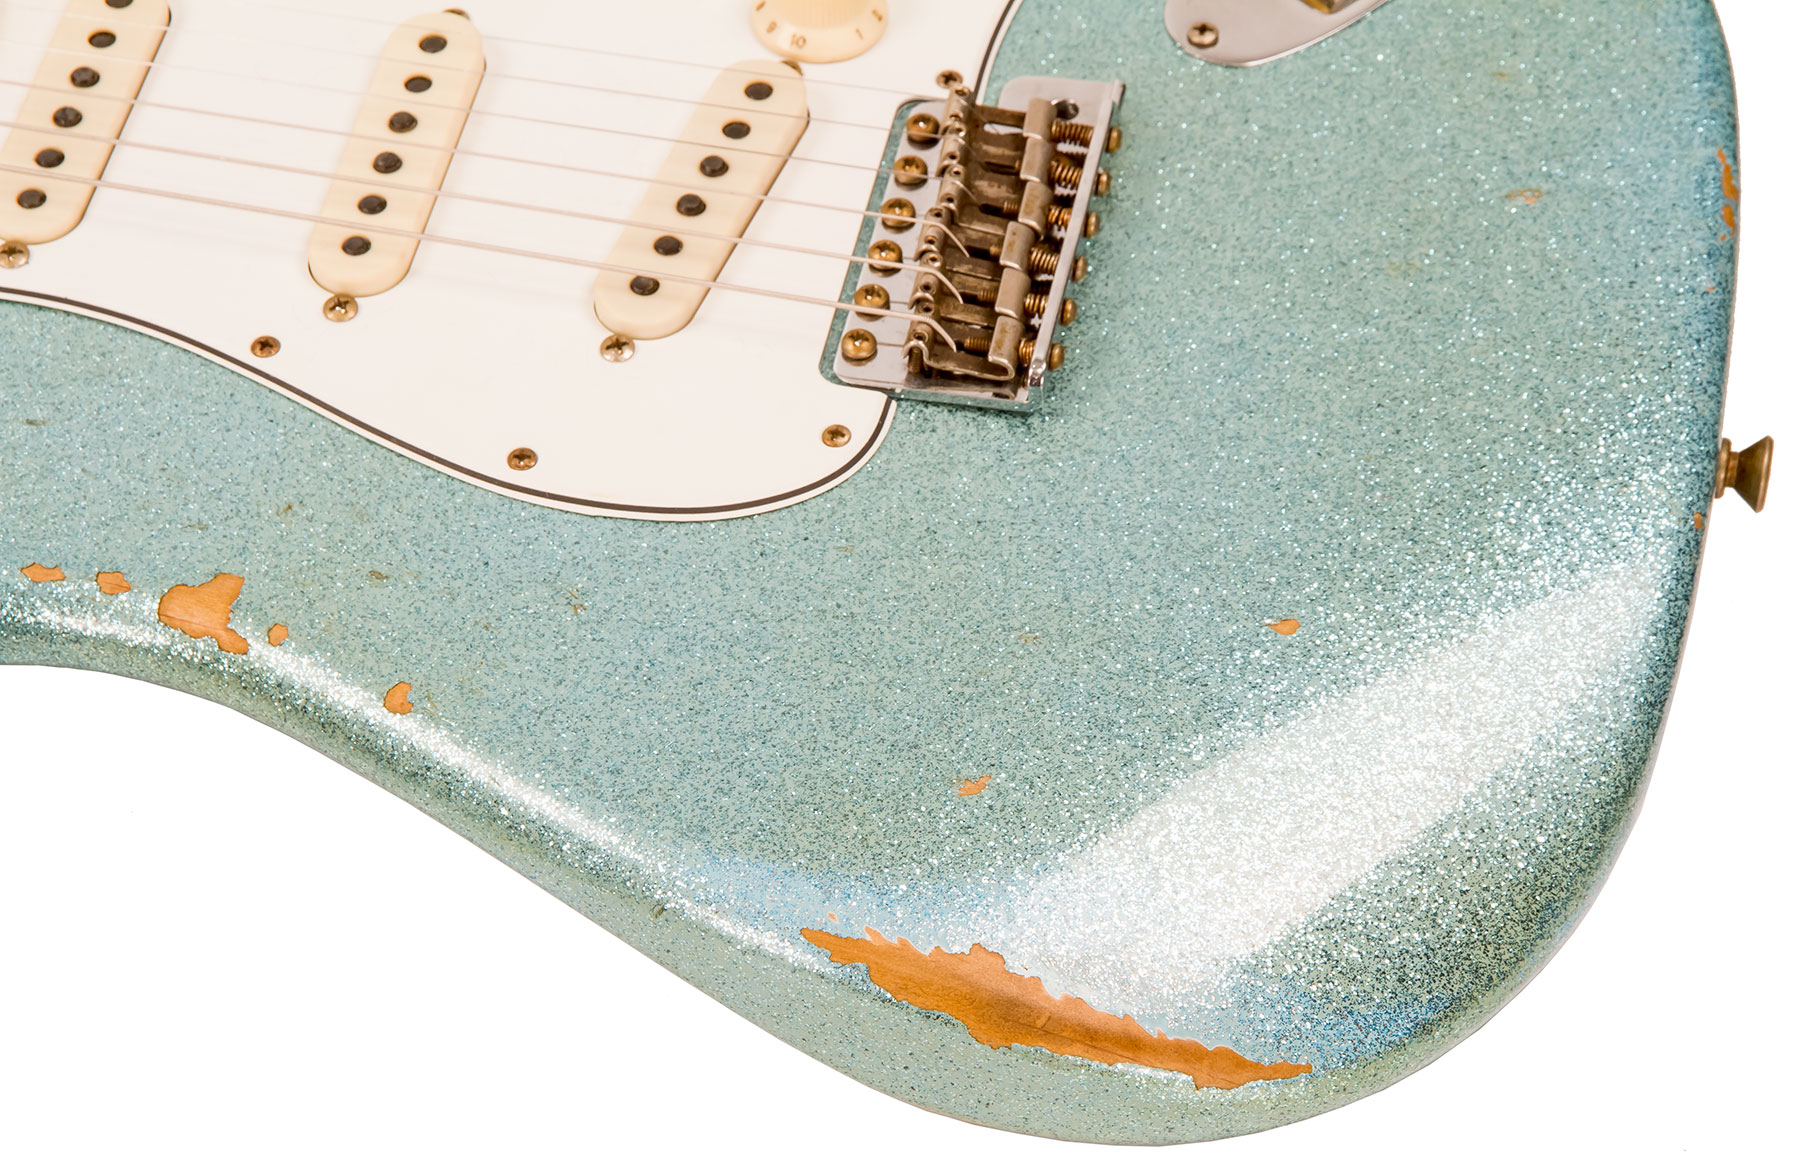 Fender Custom Shop Strat 1965 Ltd Usa Rw #cz548544 - Relic Daphne Blue Sparkle - Elektrische gitaar in Str-vorm - Variation 4